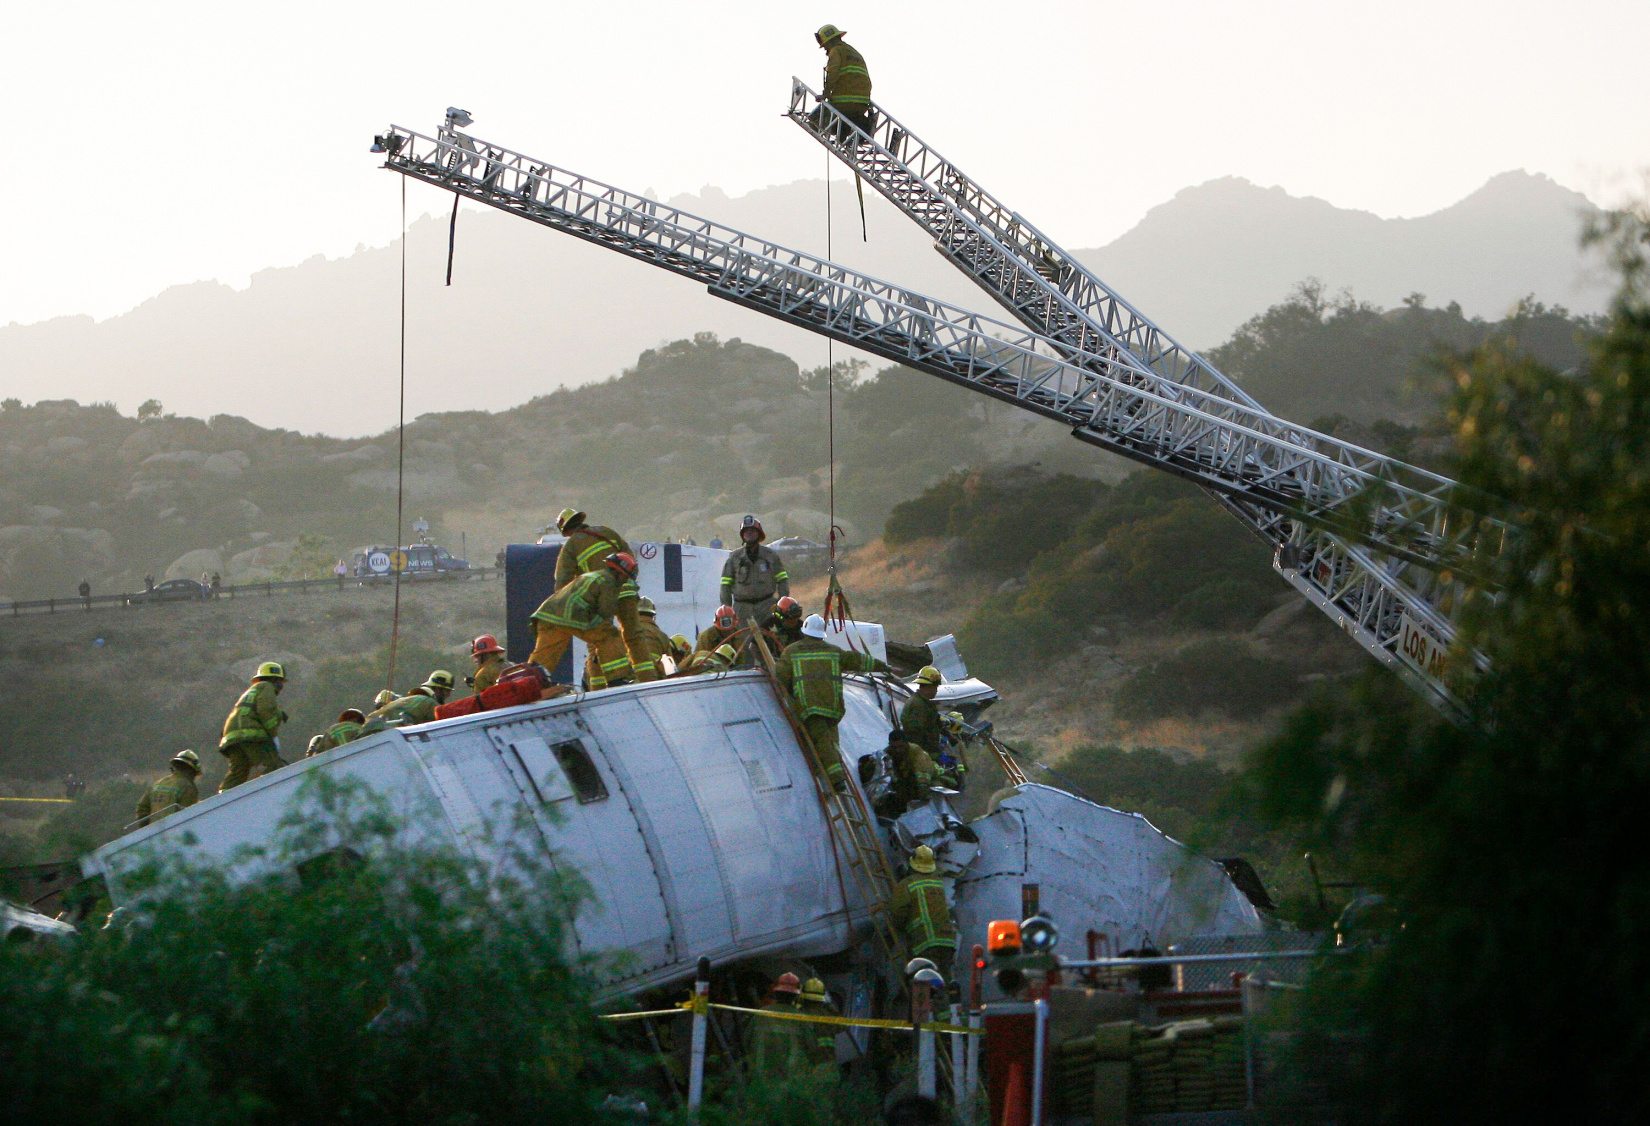 (LC: 20 de julio-22) Los bomberos trabajan para rescatar a la víctima después de que un tren de cercanías de Metrolink en ruta desde Union Station de Los Ángeles a Oxnard chocara con un tren de carga en el área de Chatsworth, el 12 de septiembre de 2008. Más de 300 bomberos están trabajando para apagar las llamas. y rescatar a las víctimas, según el Departamento de Bomberos de Los Ángeles. Crédito de la imagen: Alamy | REUTERS/Gus Ruelas (ESTADOS UNIDOS) | Identificación: 2D1M052